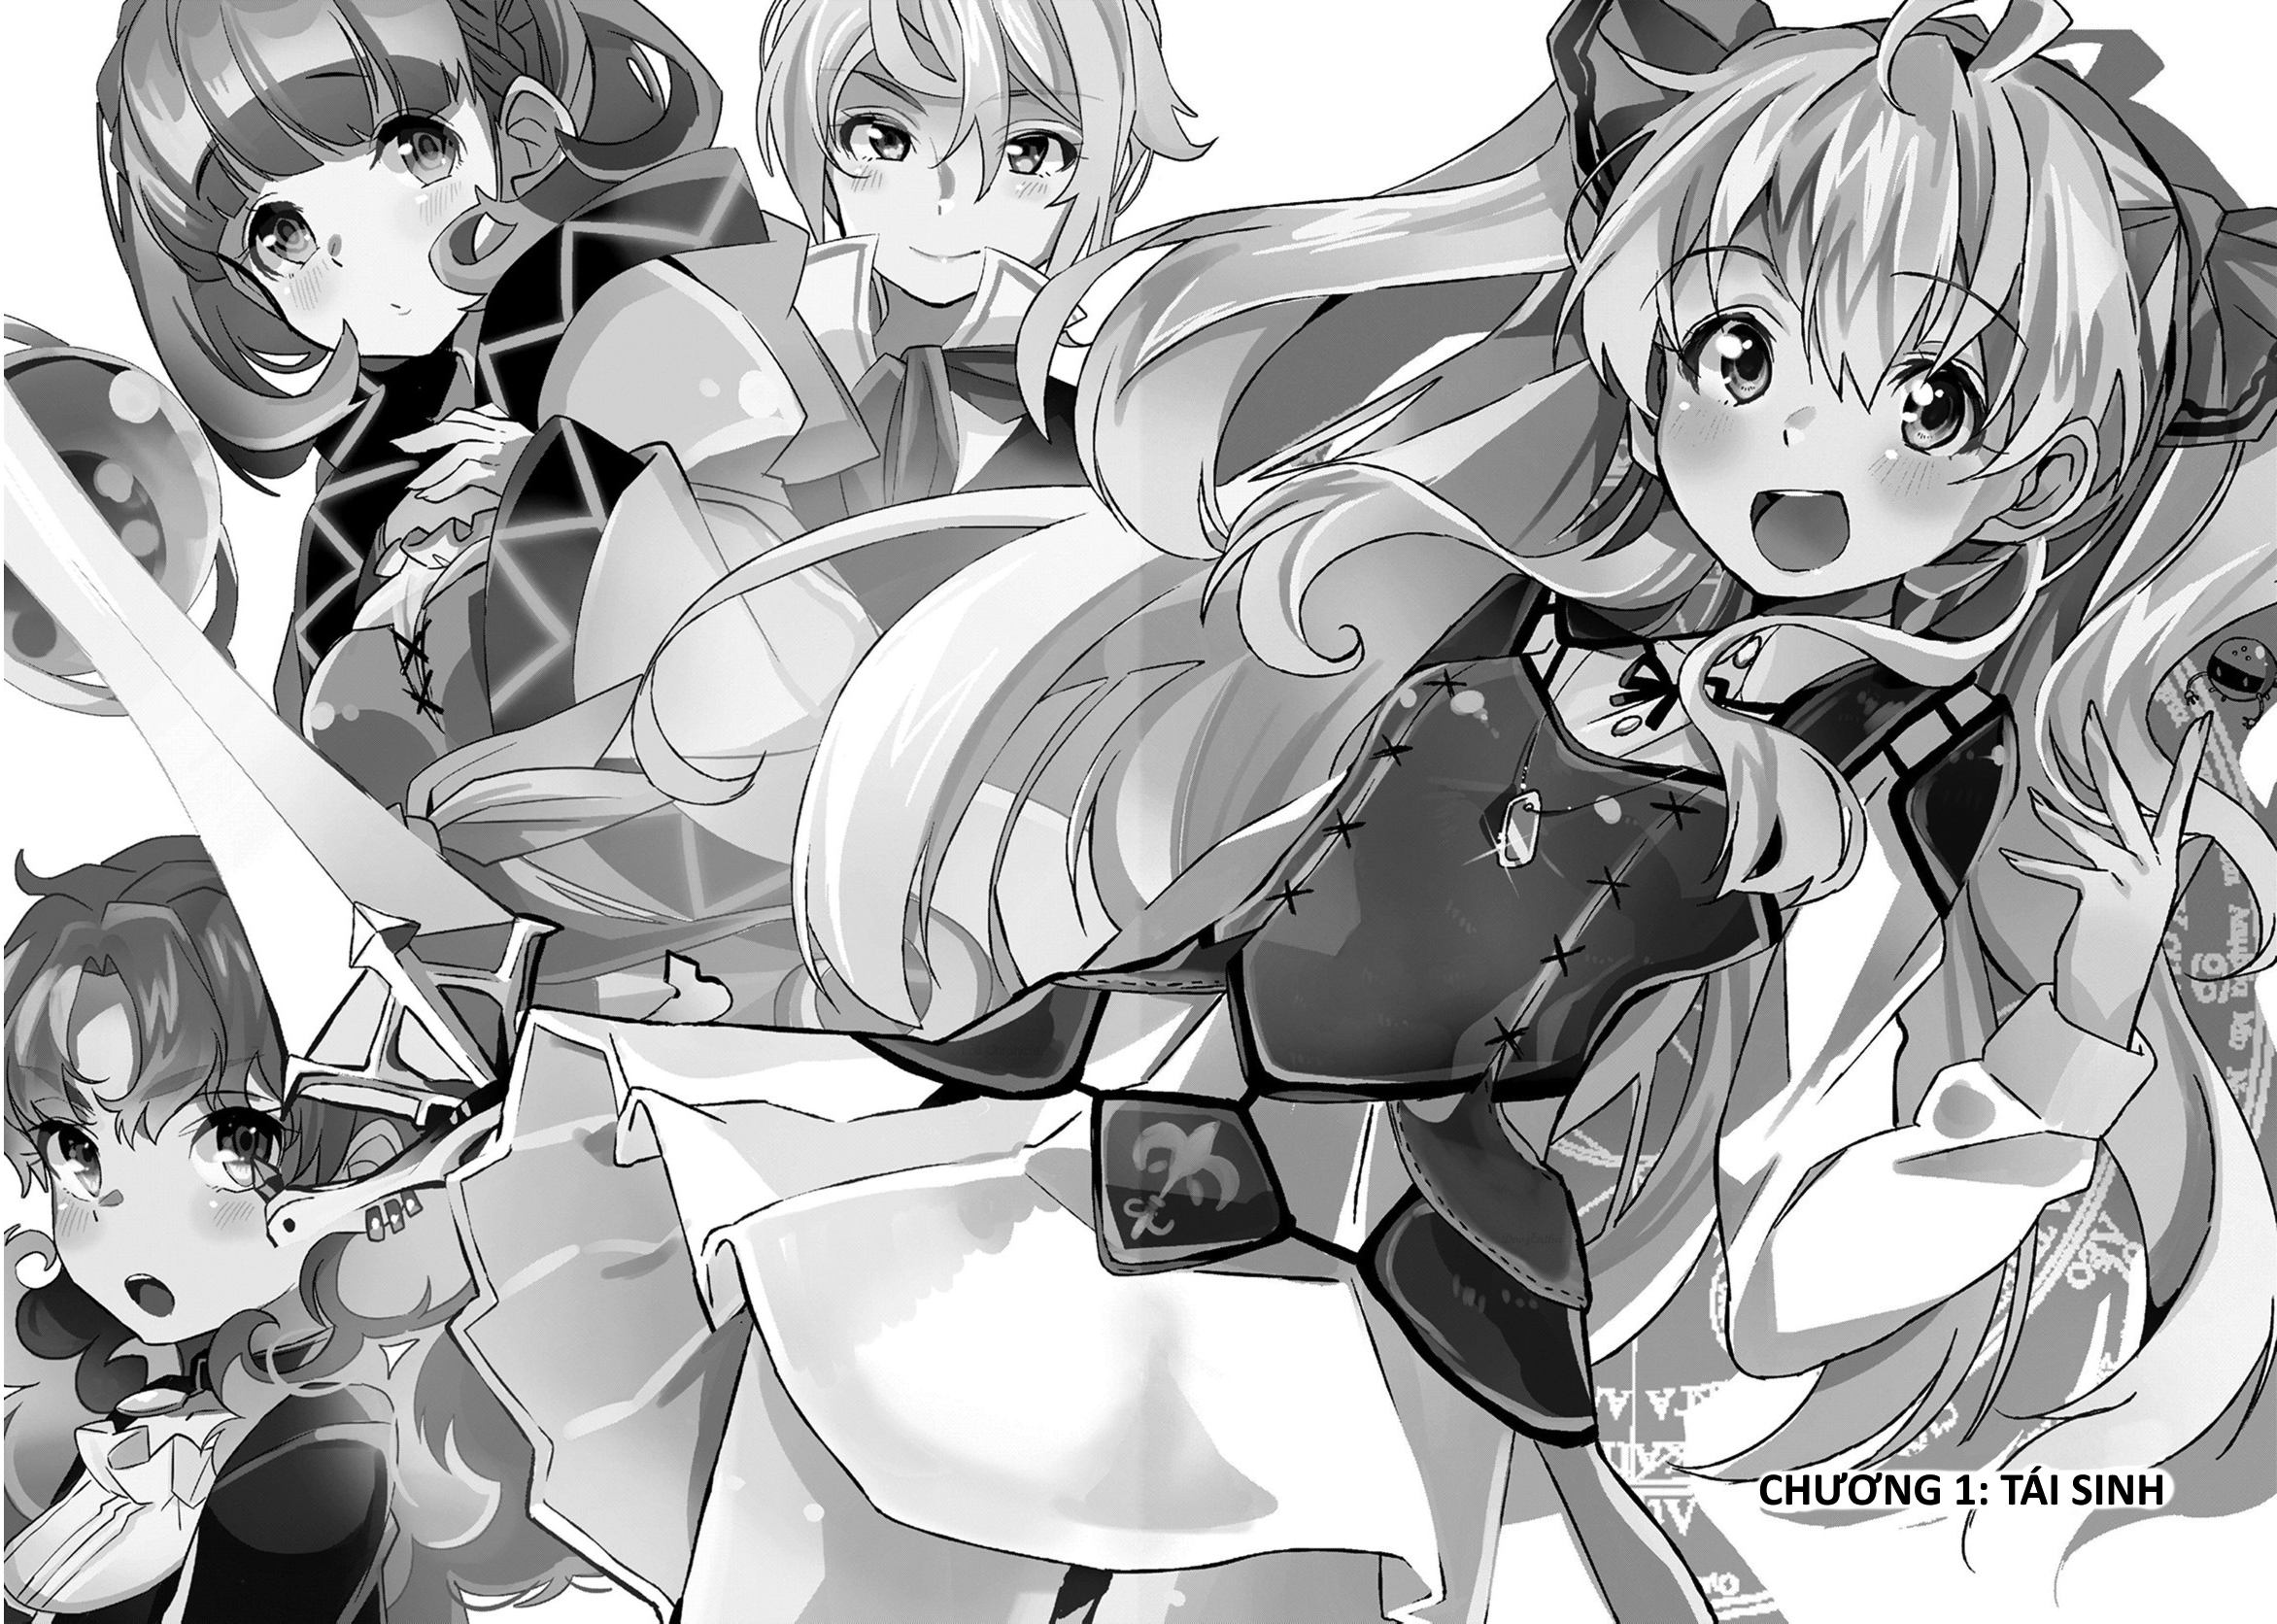 Anime Watashi Nouryoku wa Heikinchi de Tte Itta yo ne! HD Wallpaper | Background Image